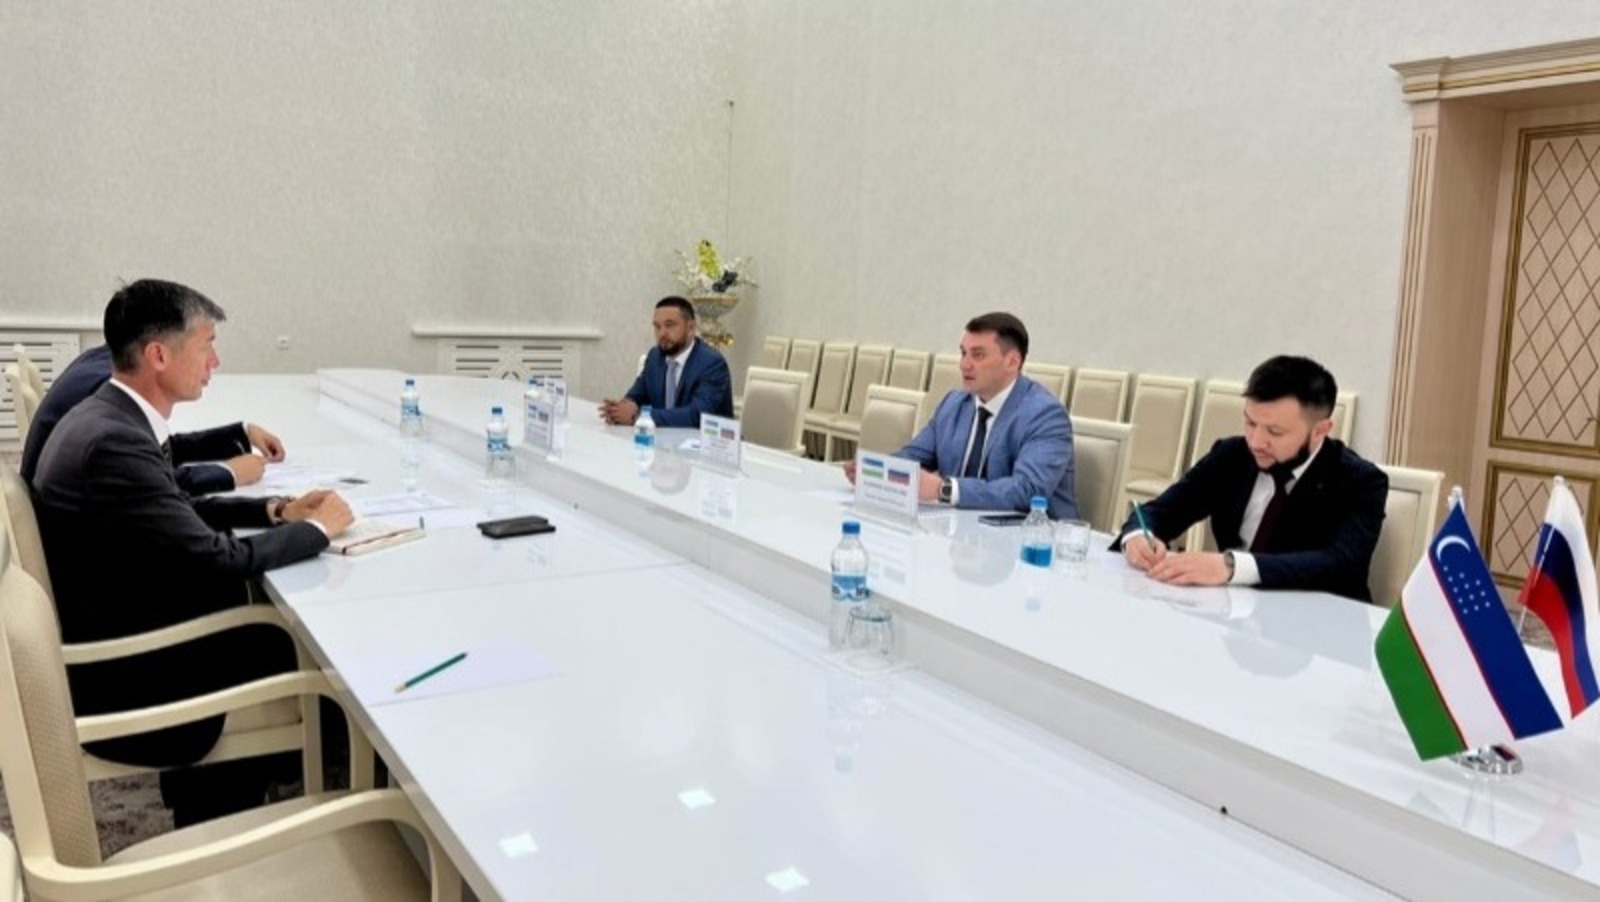 Предприниматели Башкирии и Узбекистана заключили торговые соглашения на сумму свыше 10 миллионов долларов